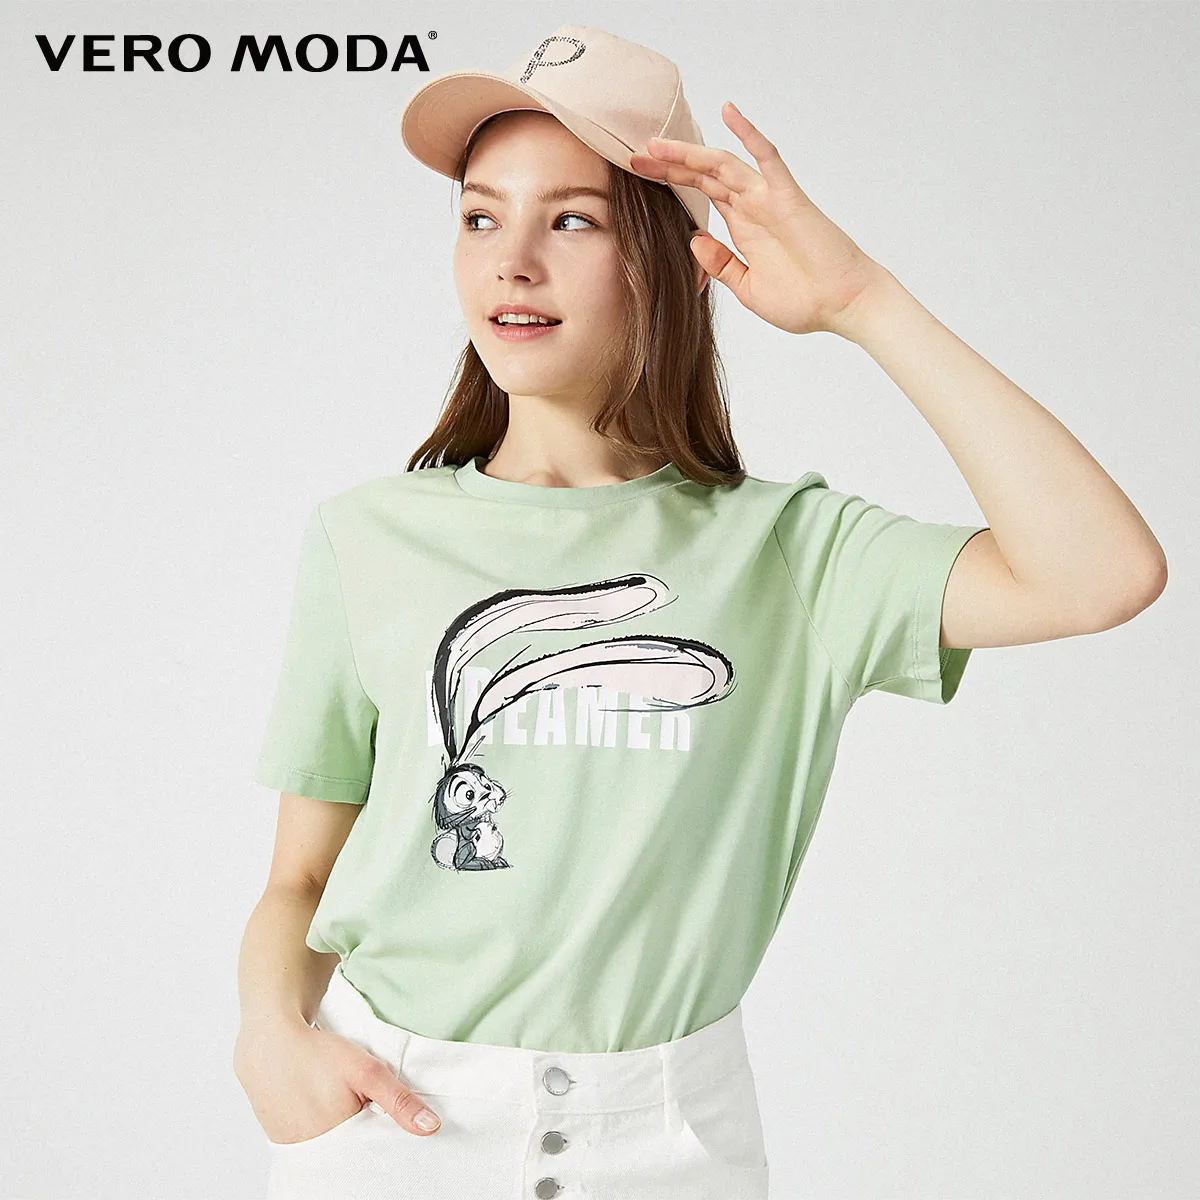 Vero Moda женская футболка с принтом букв и животных | 319201562 - Цвет: Quiet green